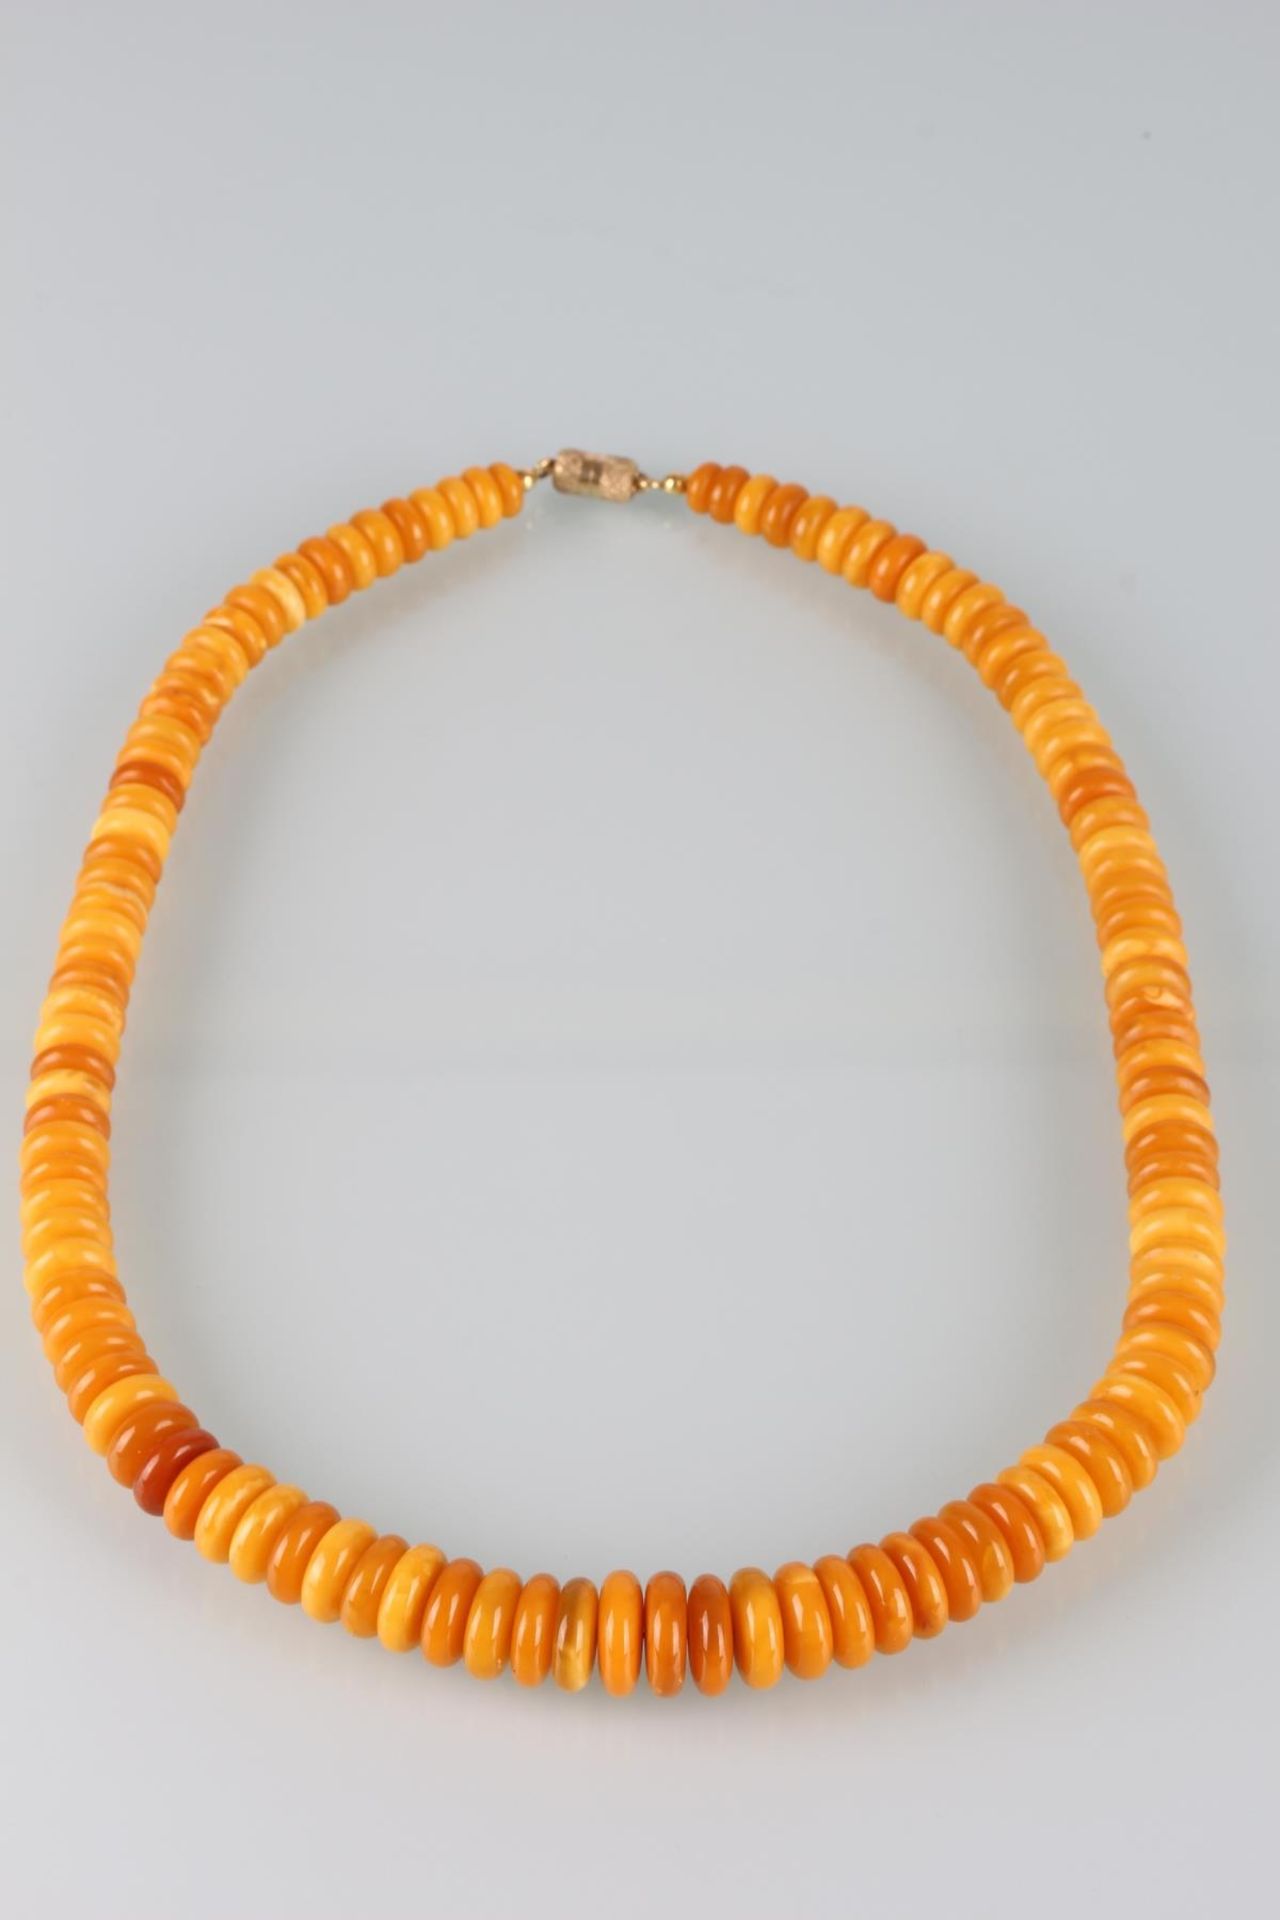 Bernstein Collier / Halskette, butterscotch amber necklace, - Bild 4 aus 5